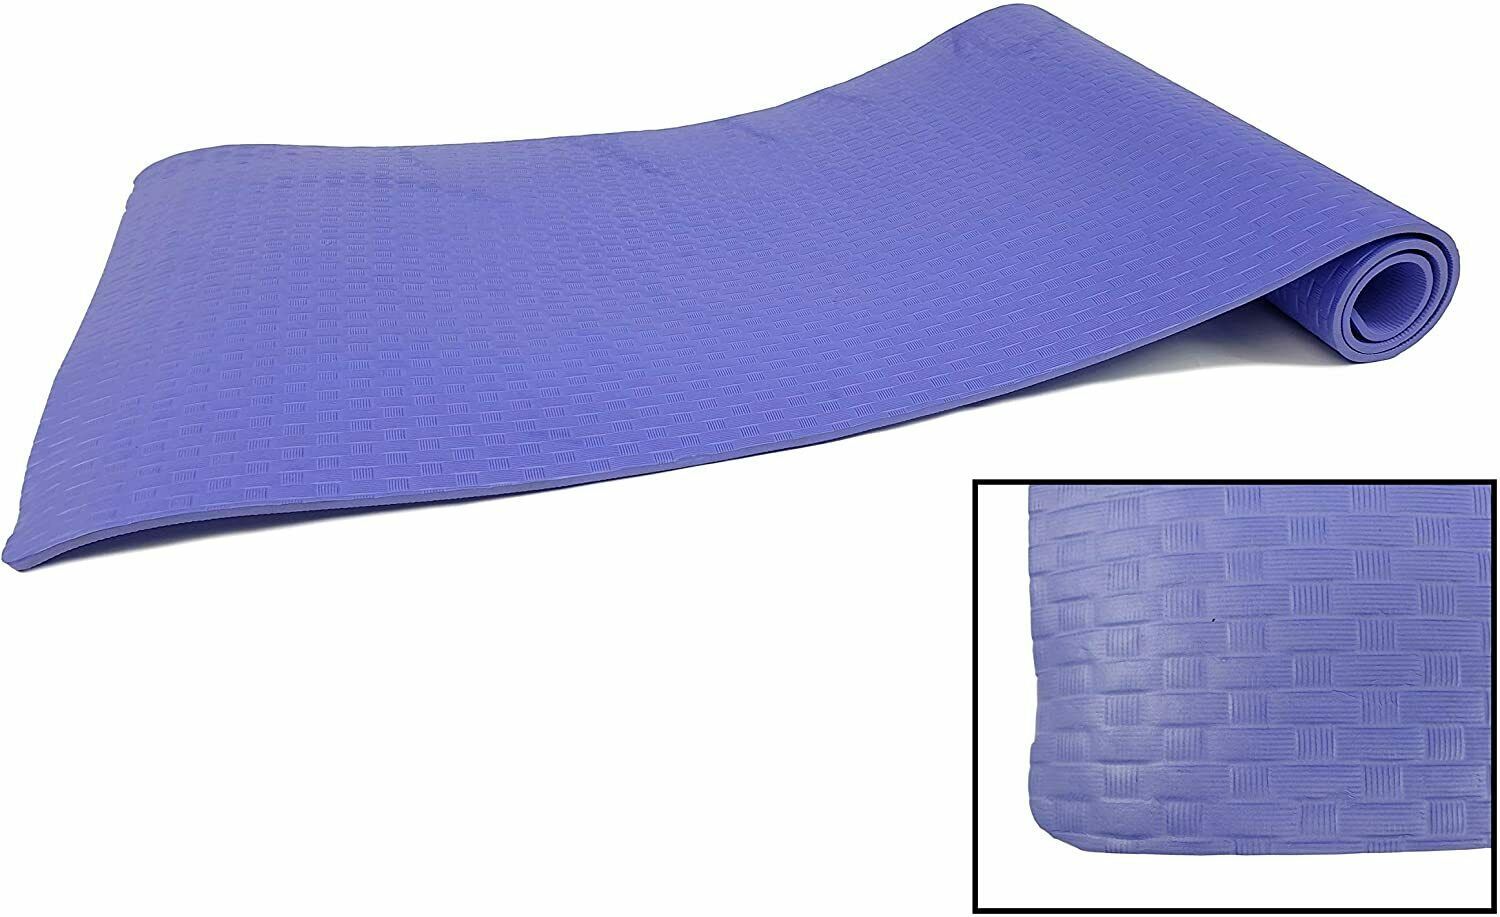 Esterilla Yoga Antideslizante entrenamiento 61x183 cm Azul